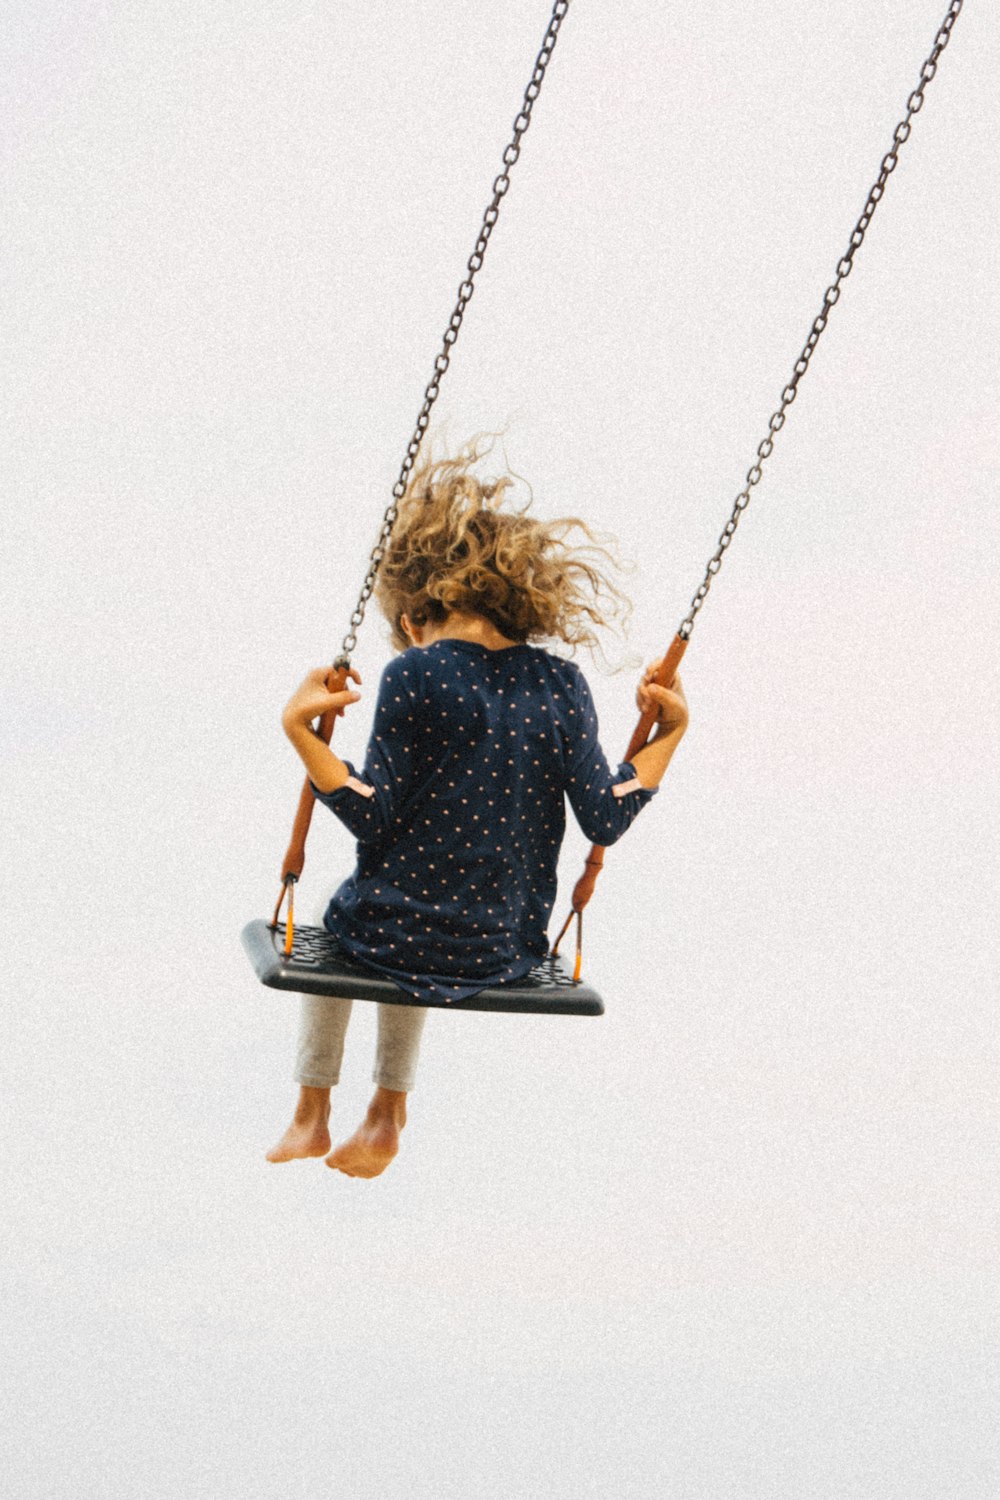 a little girl is swinging on a swing